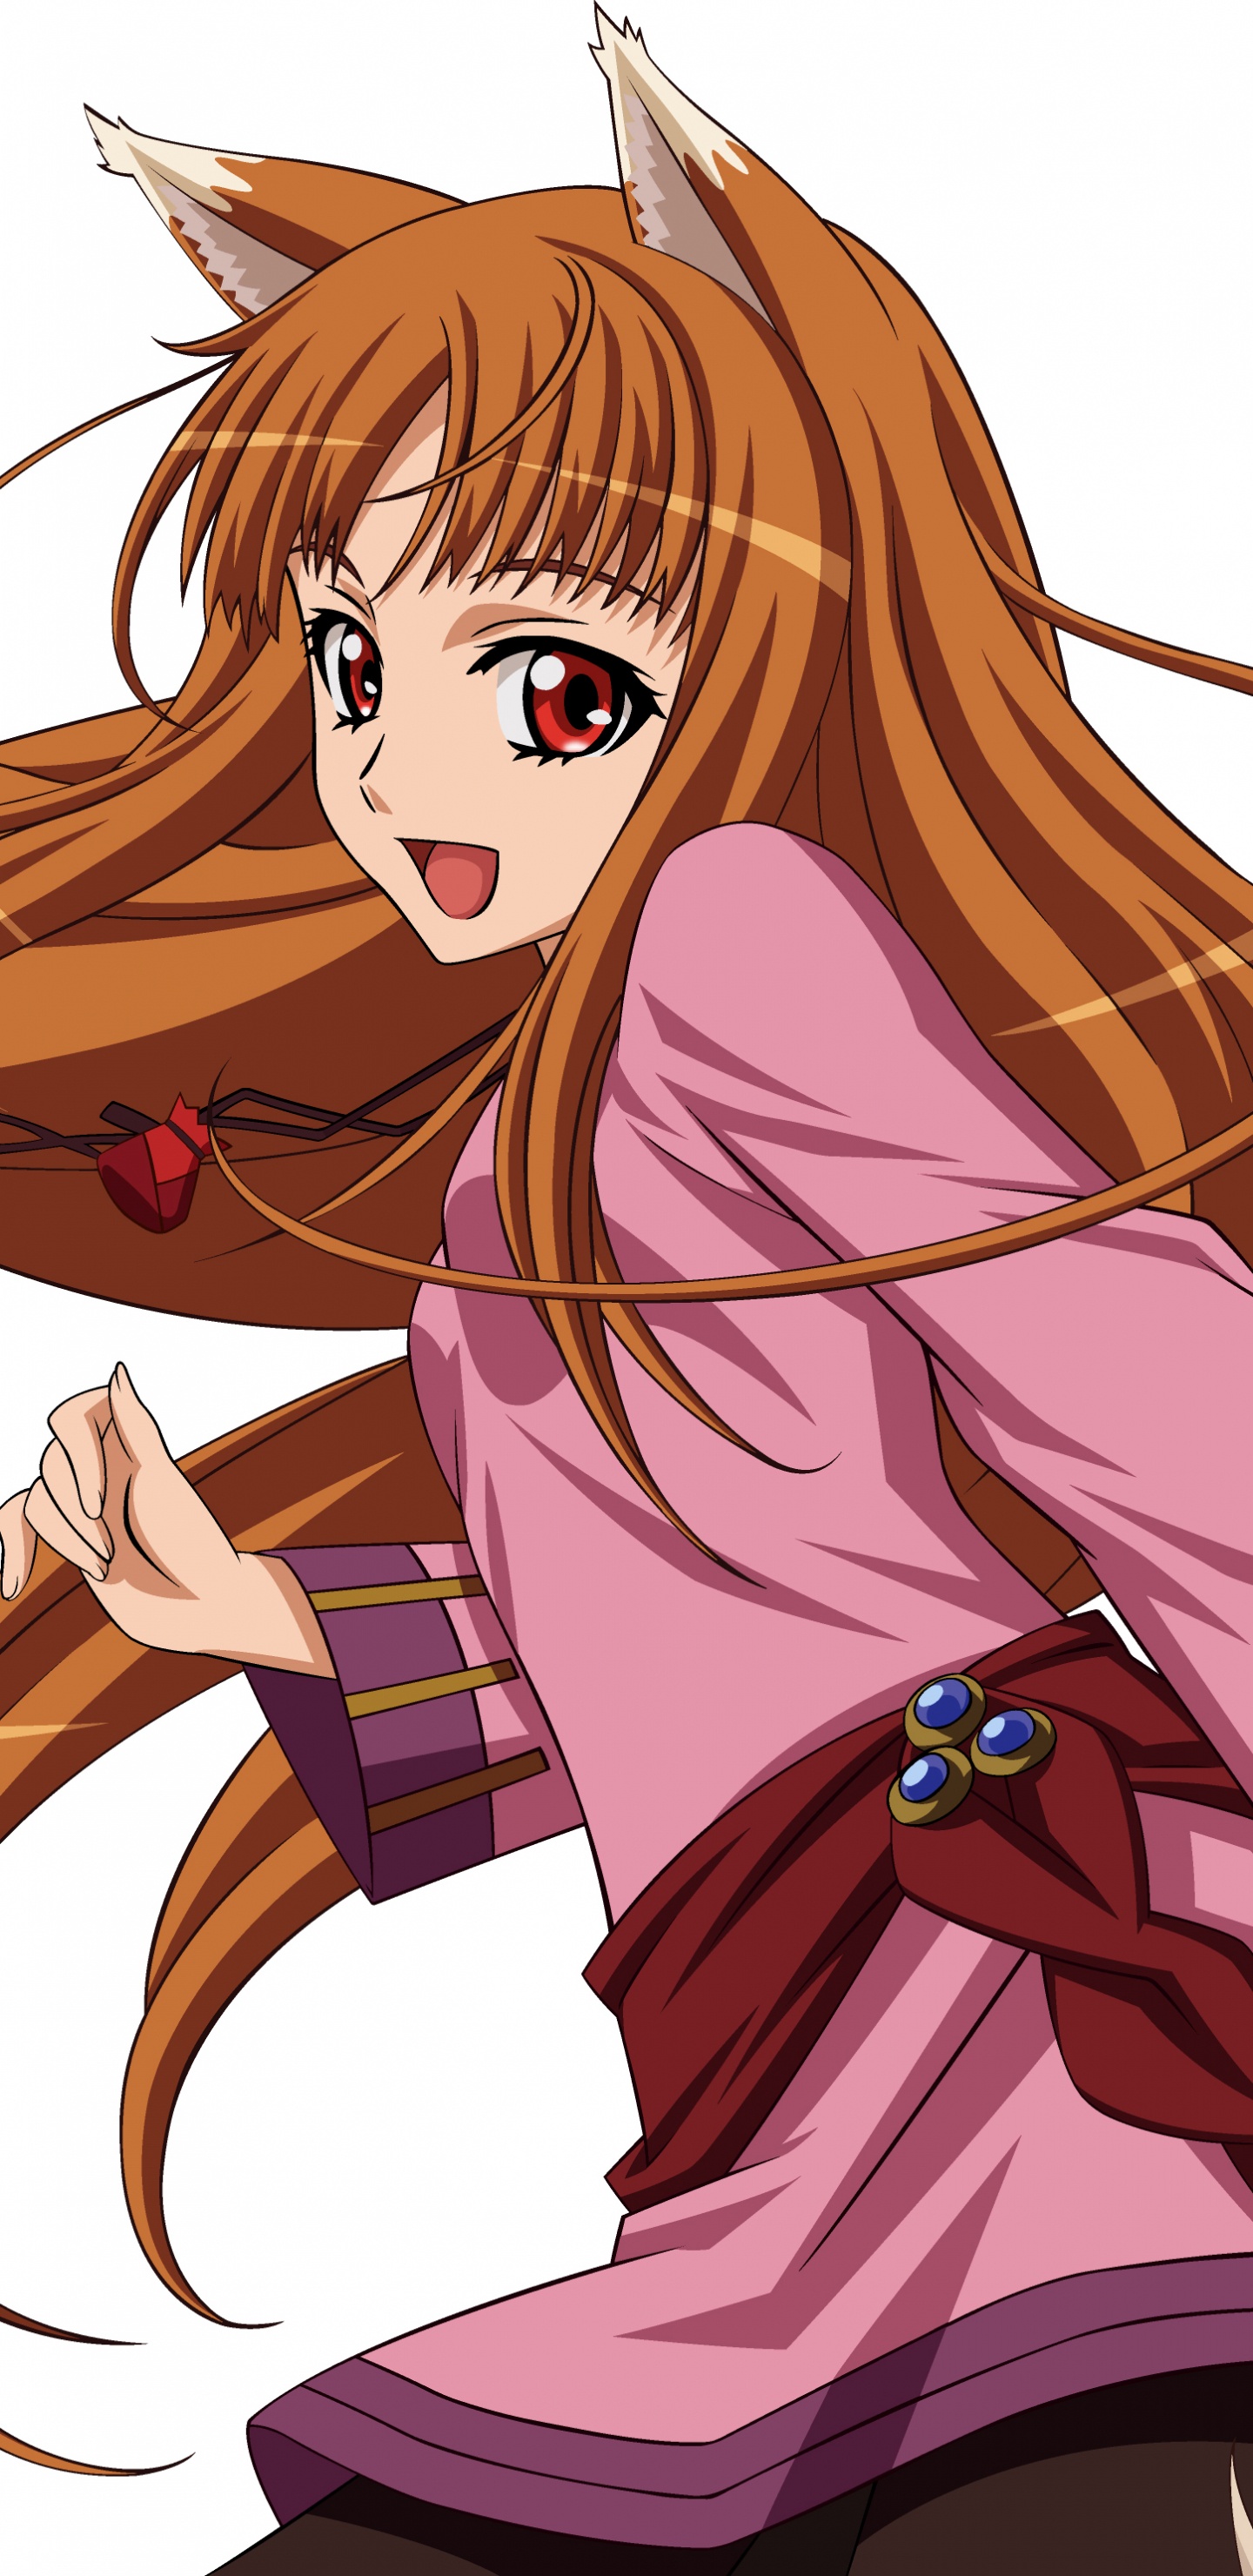 Chica de Pelo Rubio en Vestido Rosa Personaje de Anime. Wallpaper in 1440x2960 Resolution